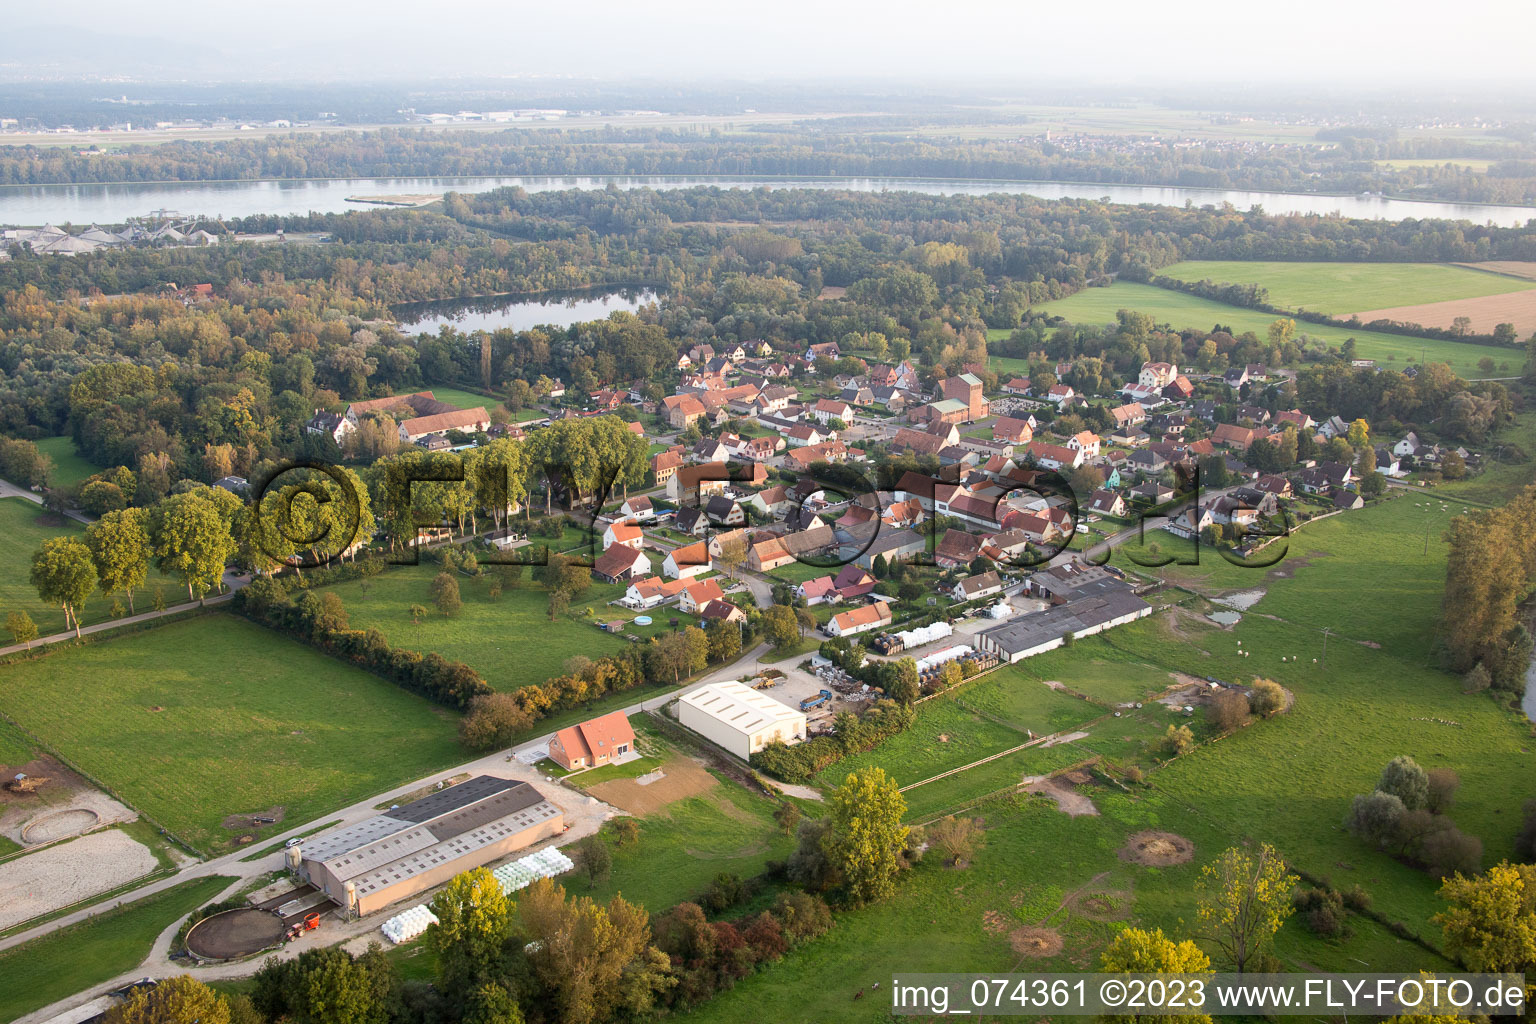 Fort-Louis im Bundesland Bas-Rhin, Frankreich aus der Luft betrachtet